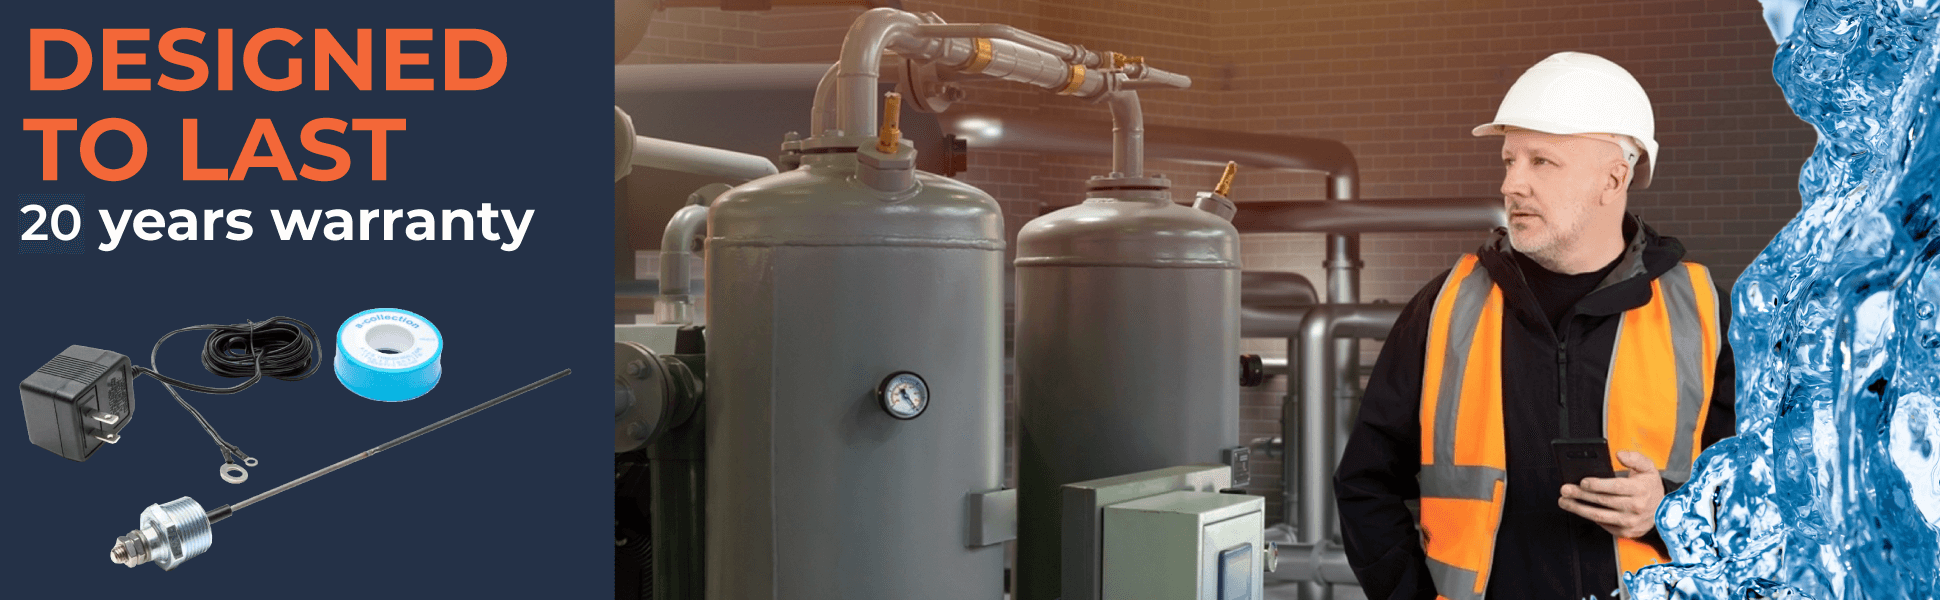 Corrosion Guard - varilla de ánodo universal para calentadores de agua, 40-89 gallons, se adapta a cualquier marca - Adaptador de US.